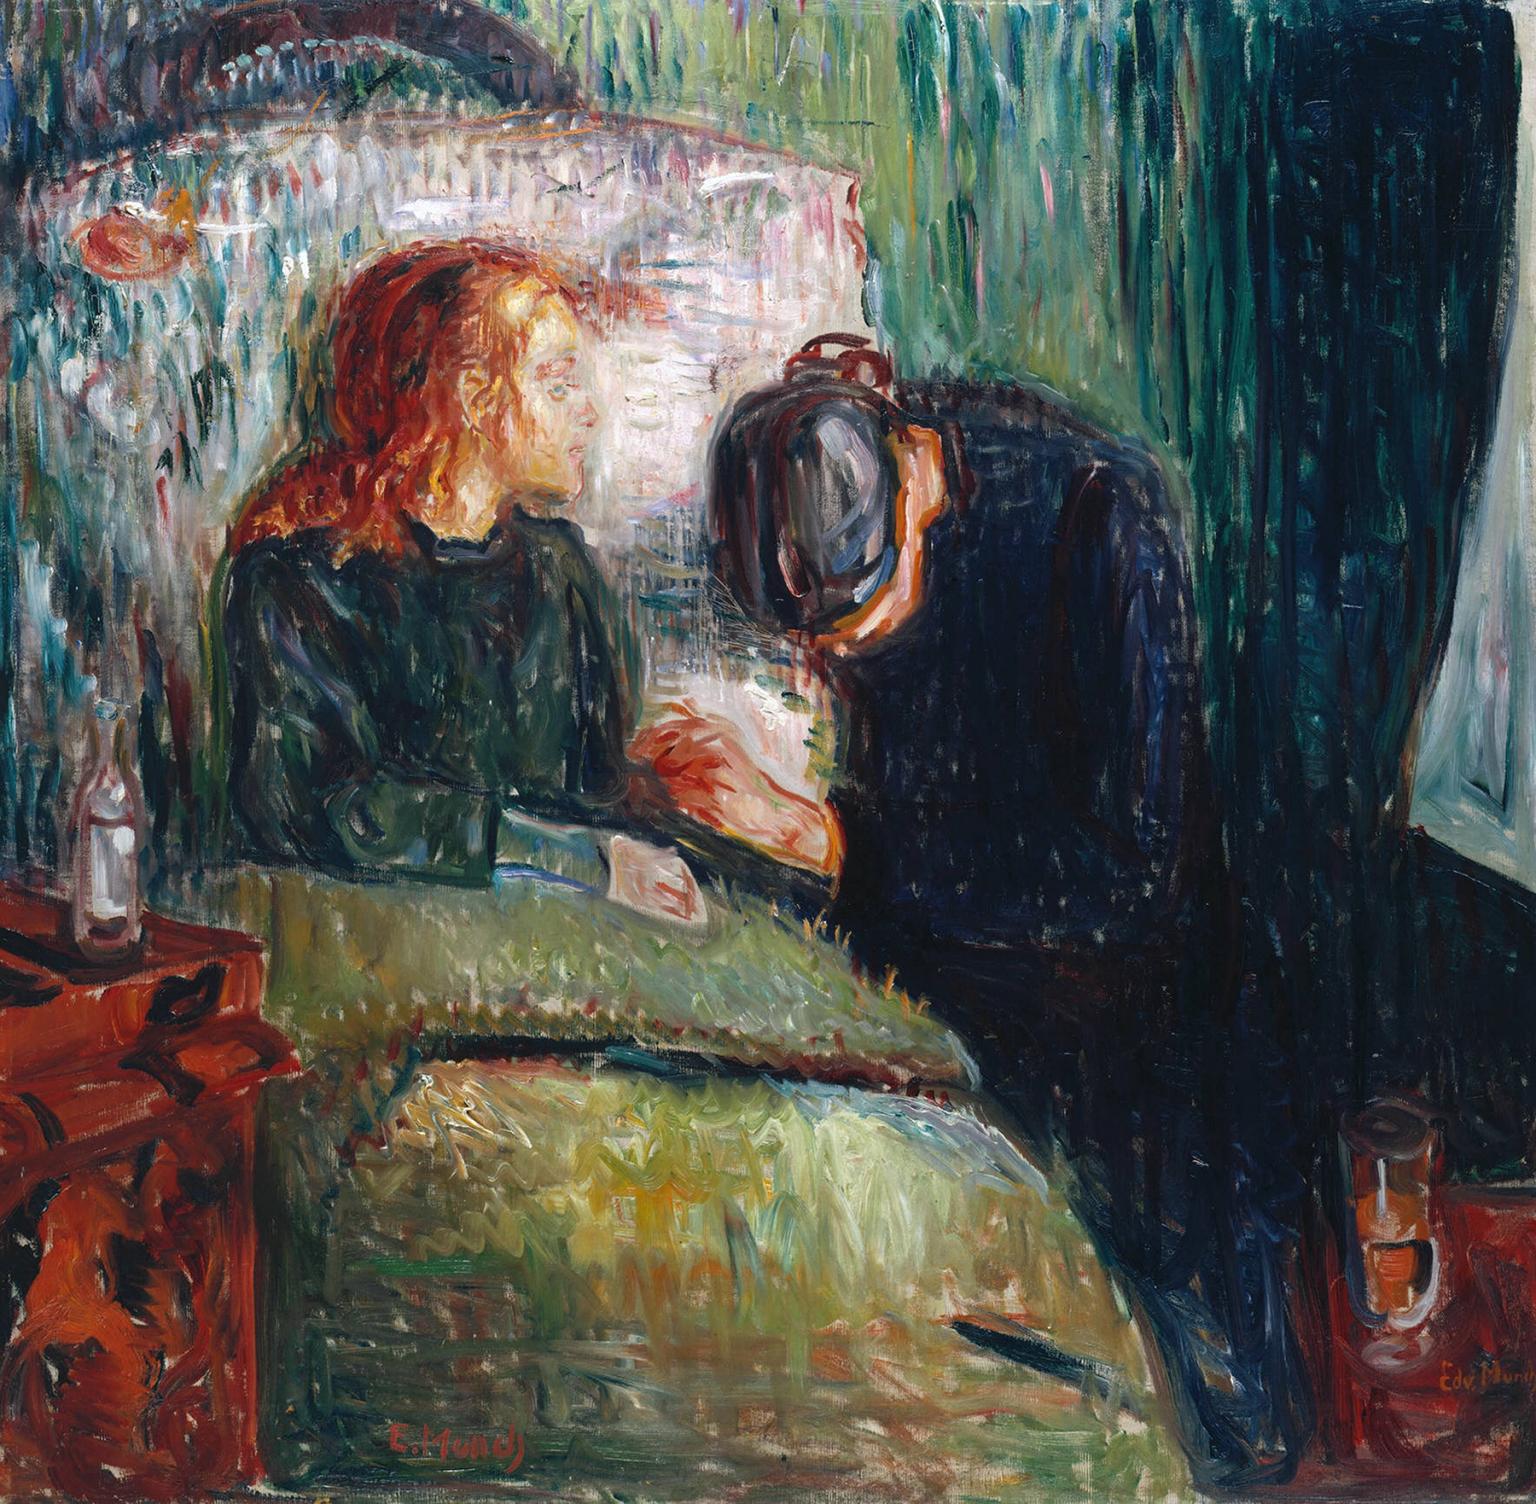 Foto: Gemälde. Ein Kind liegt im Bett und eine Frau steht mit gesenkten Kopf daneben und hält die Hand des Kindes.